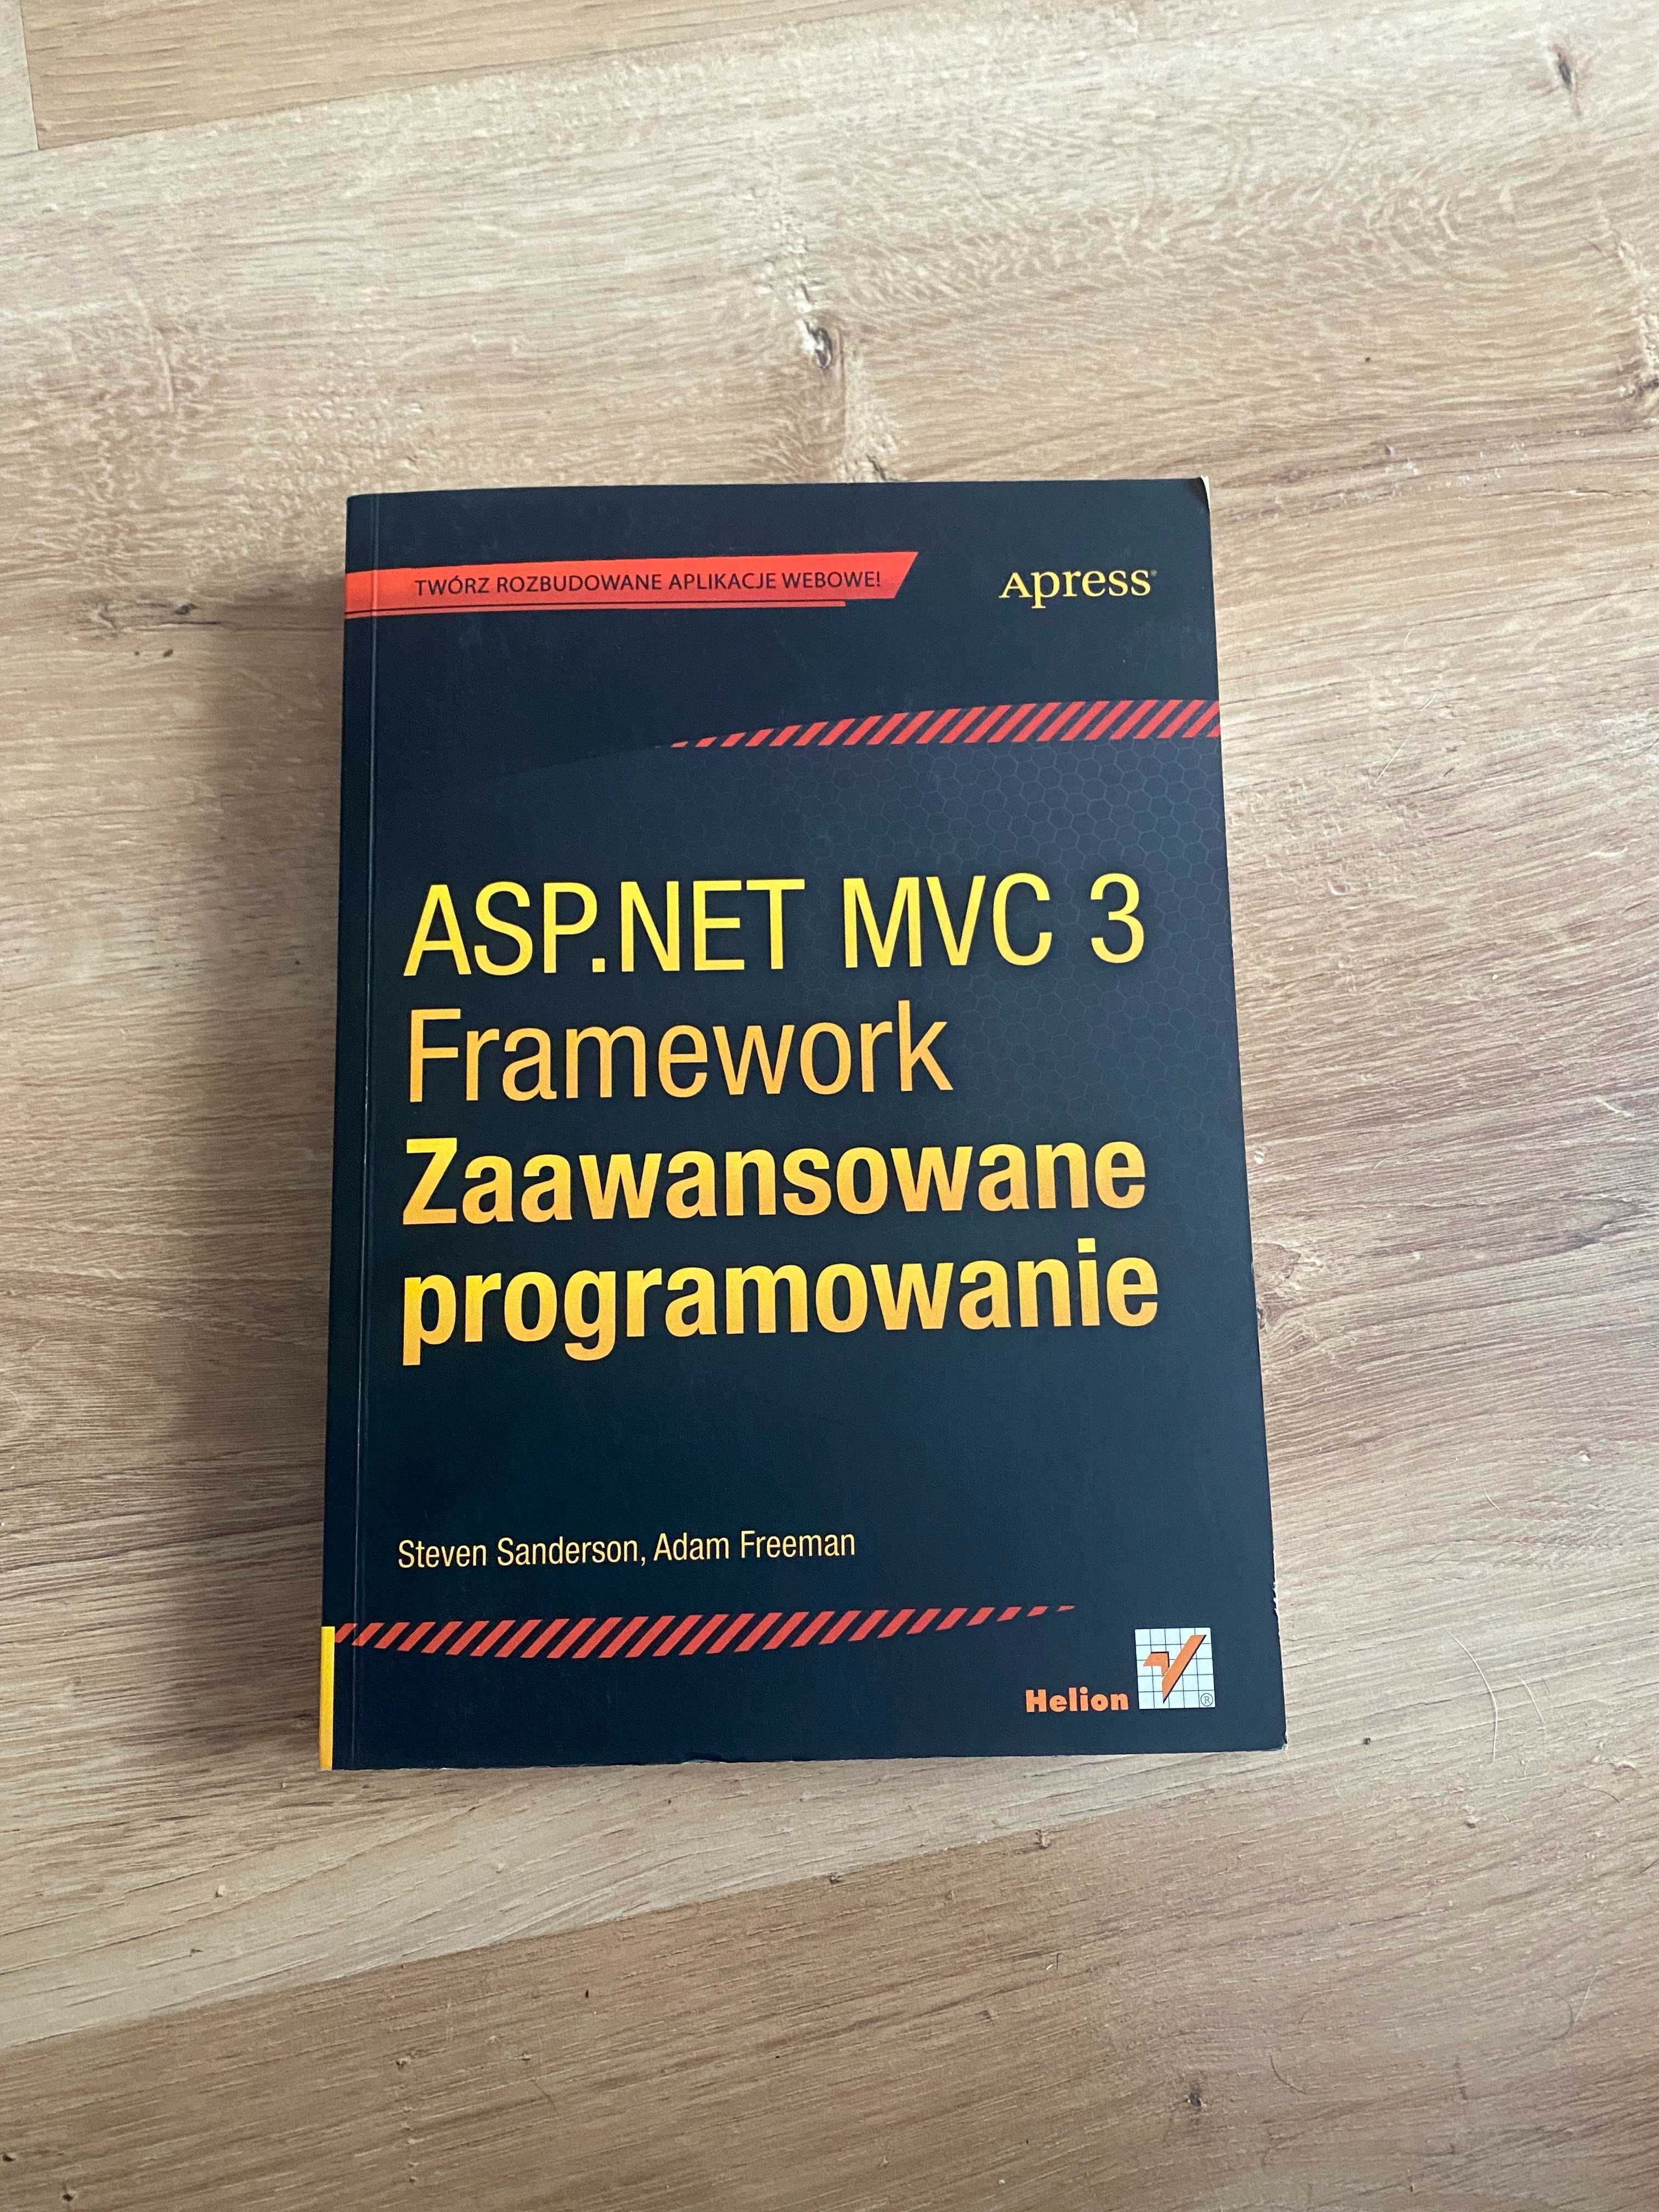 ASP.NET MVC Framework - zaawansowane programowanie